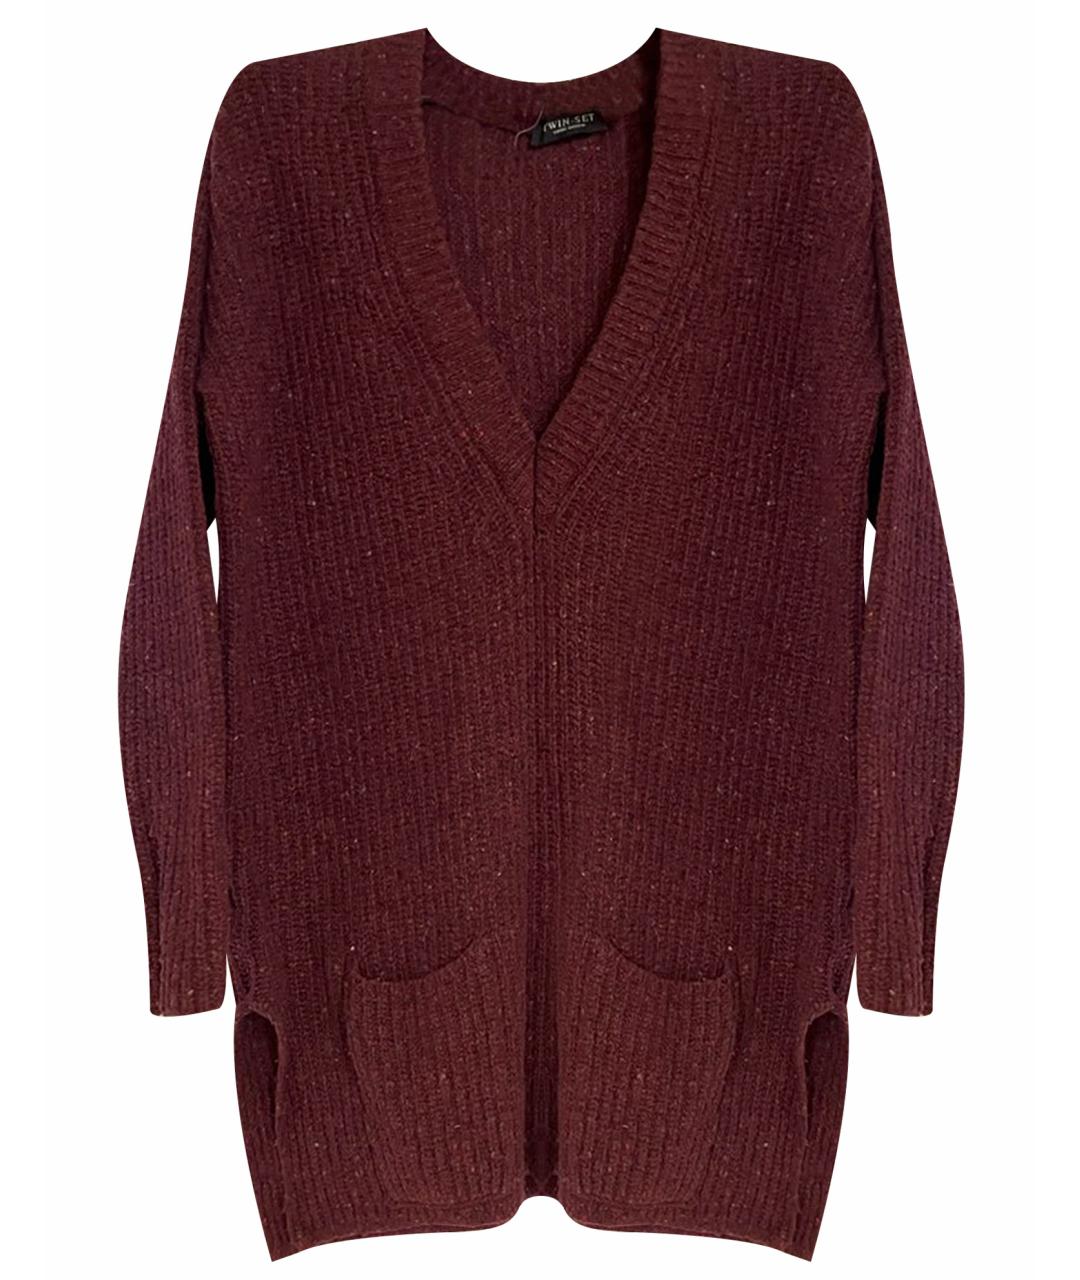 TWIN-SET Бордовый шерстяной джемпер / свитер, фото 1